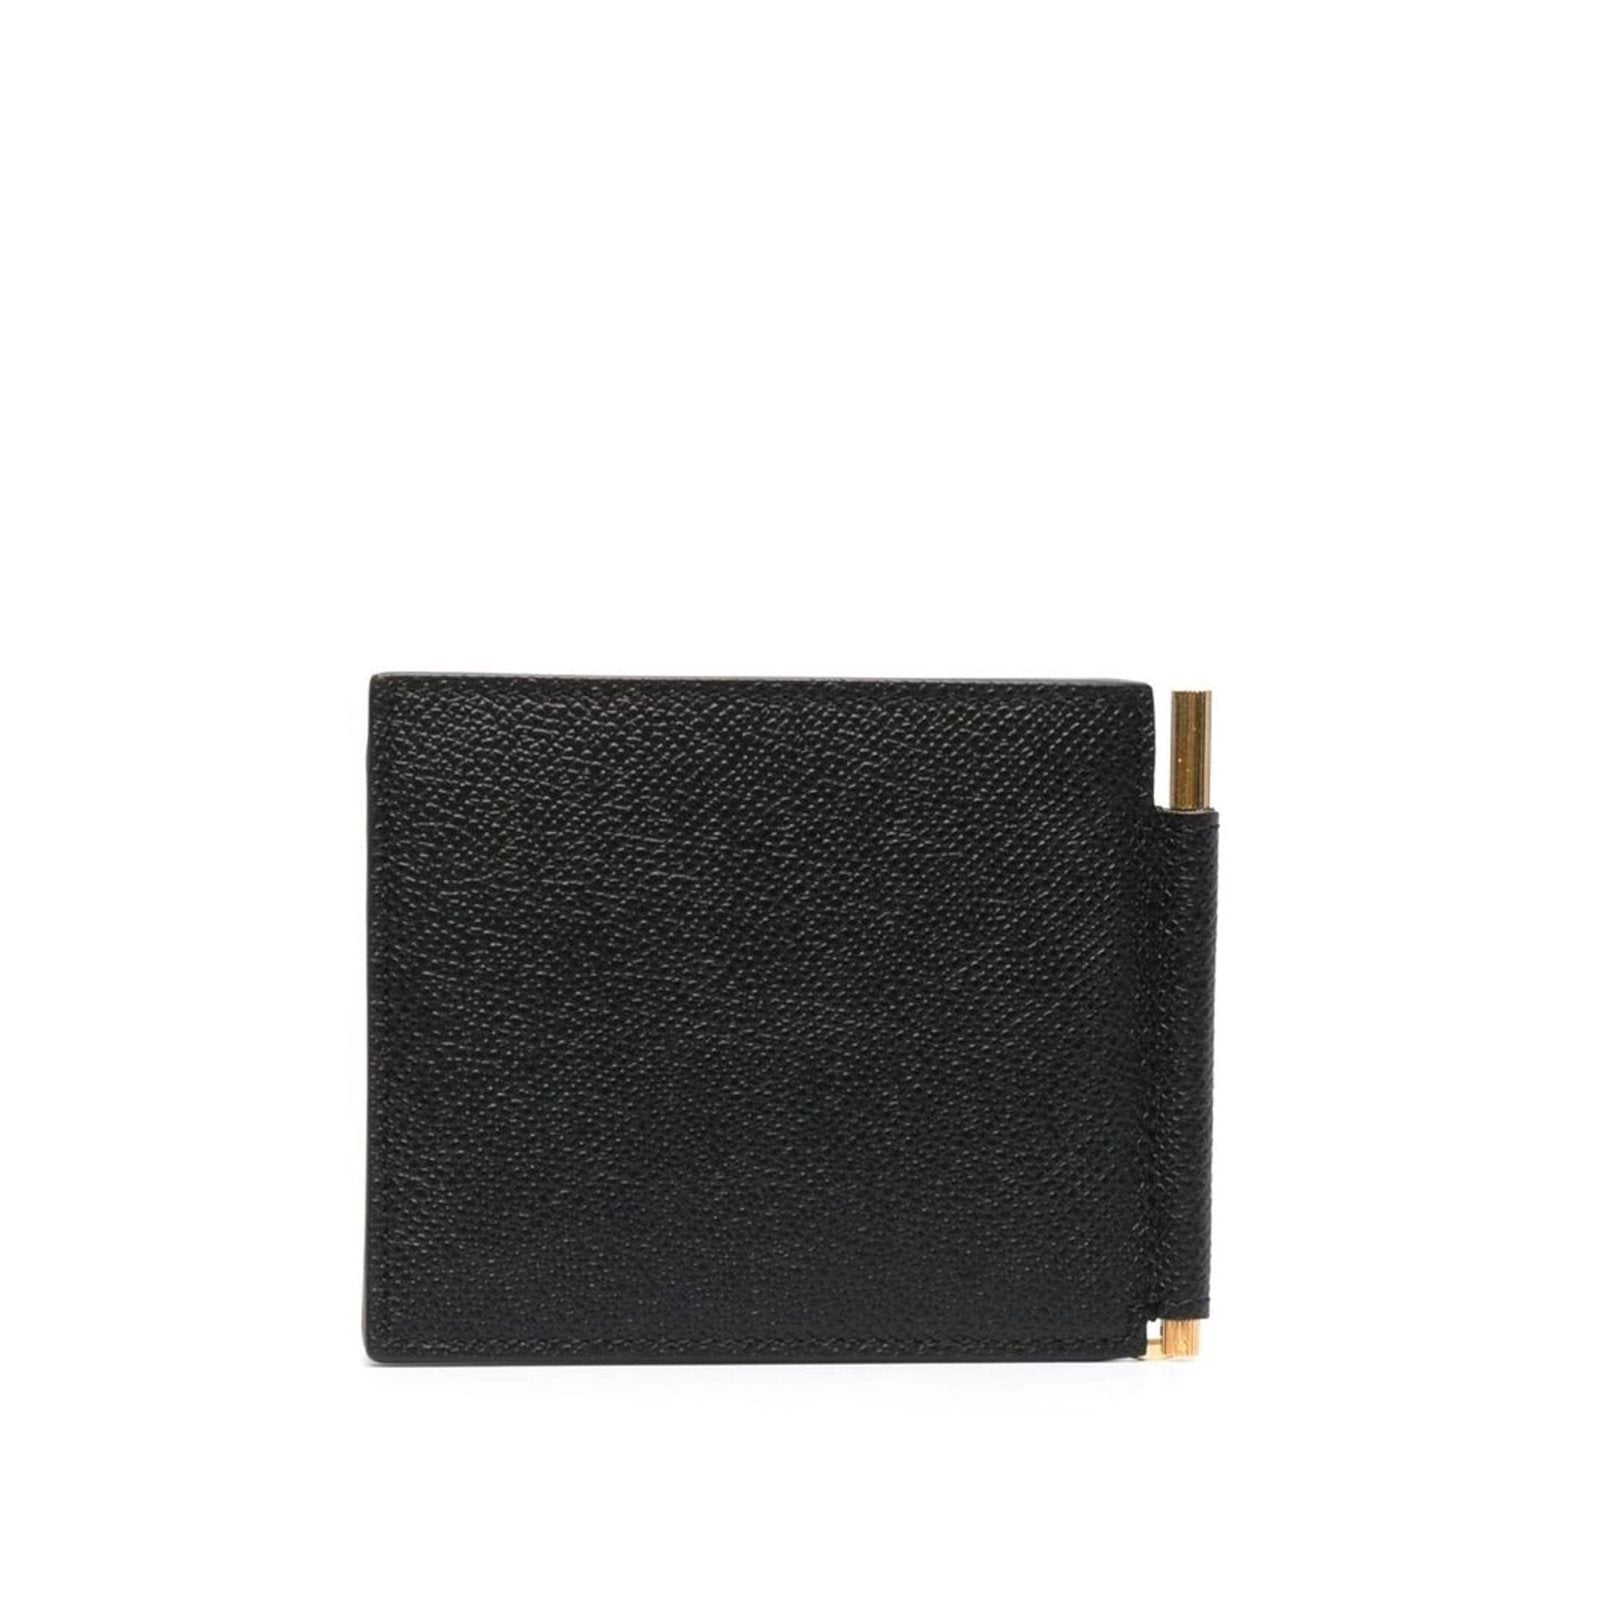 Grain leather bifold wallet